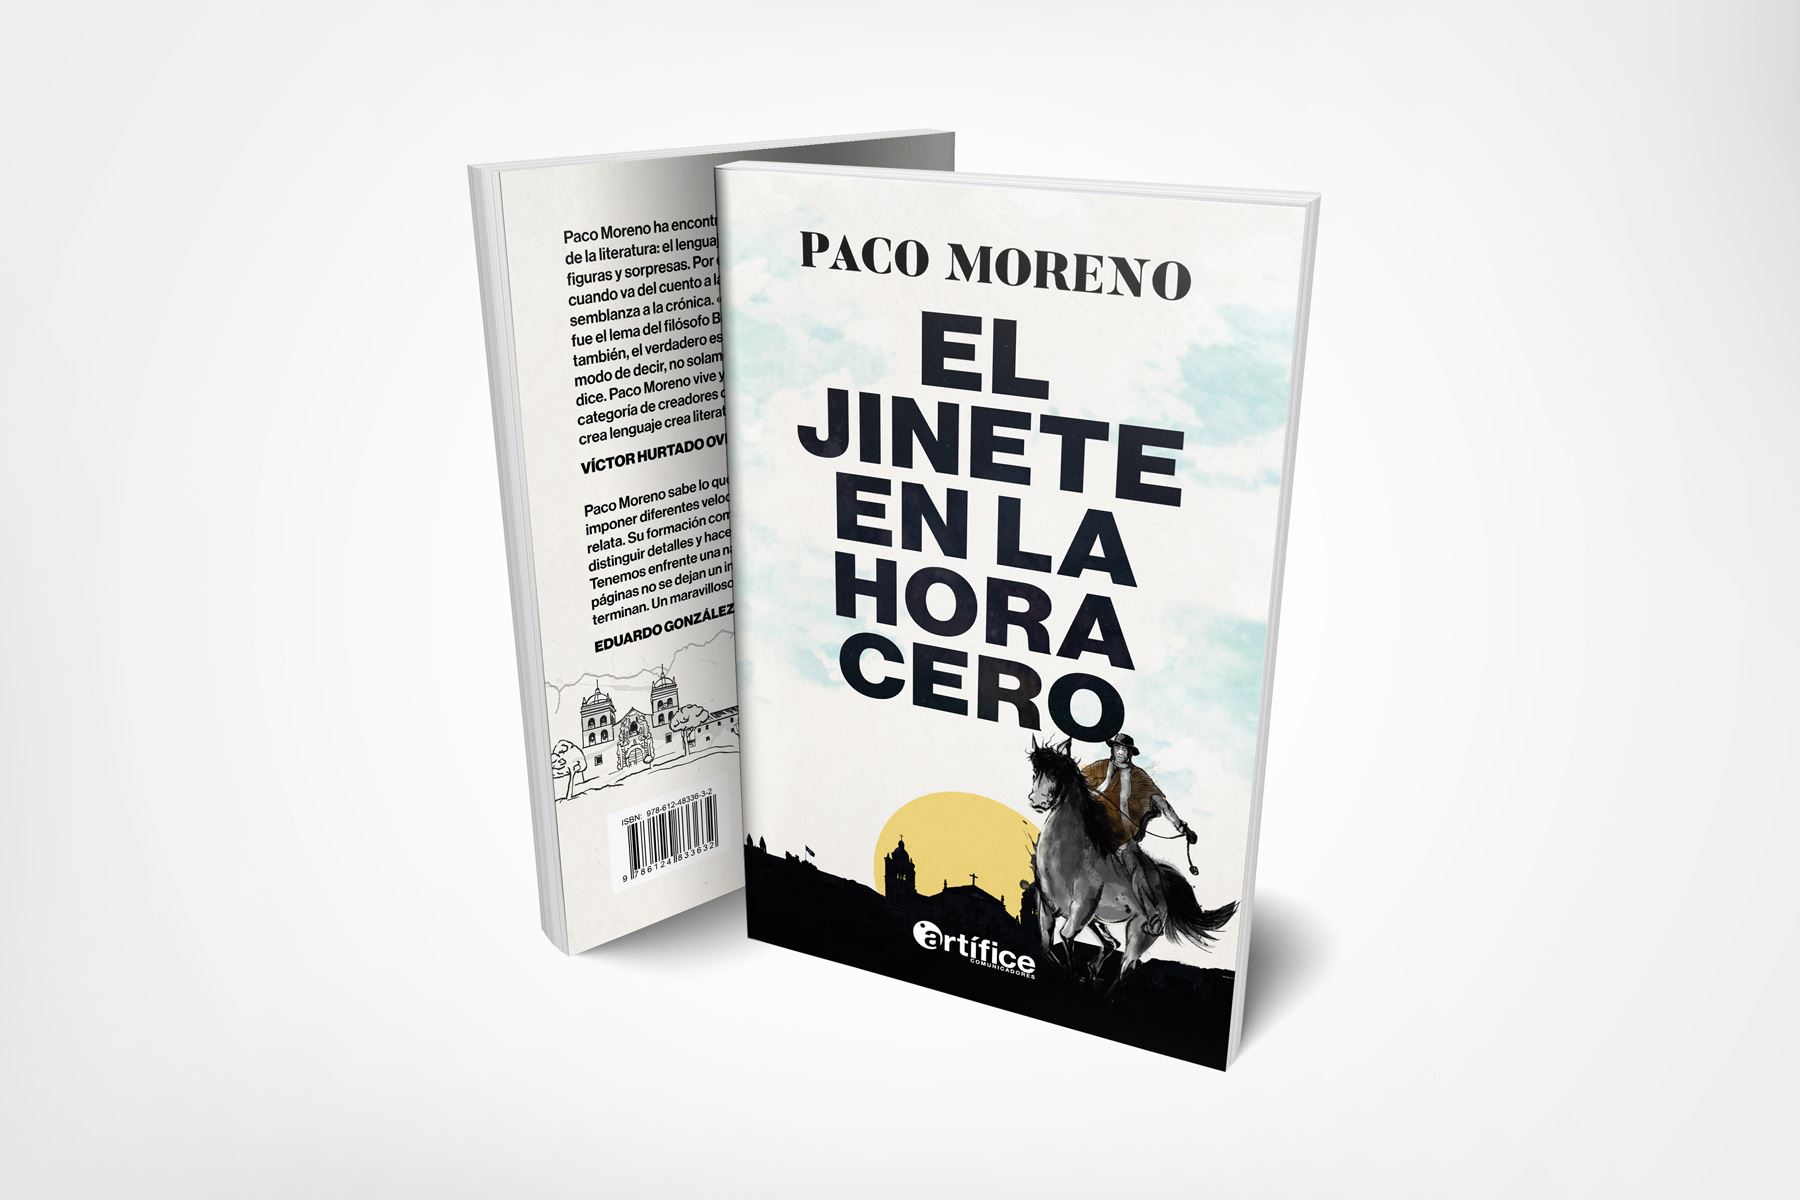 Paco Moreno publica novela histórica "El jinete en la hora cero".